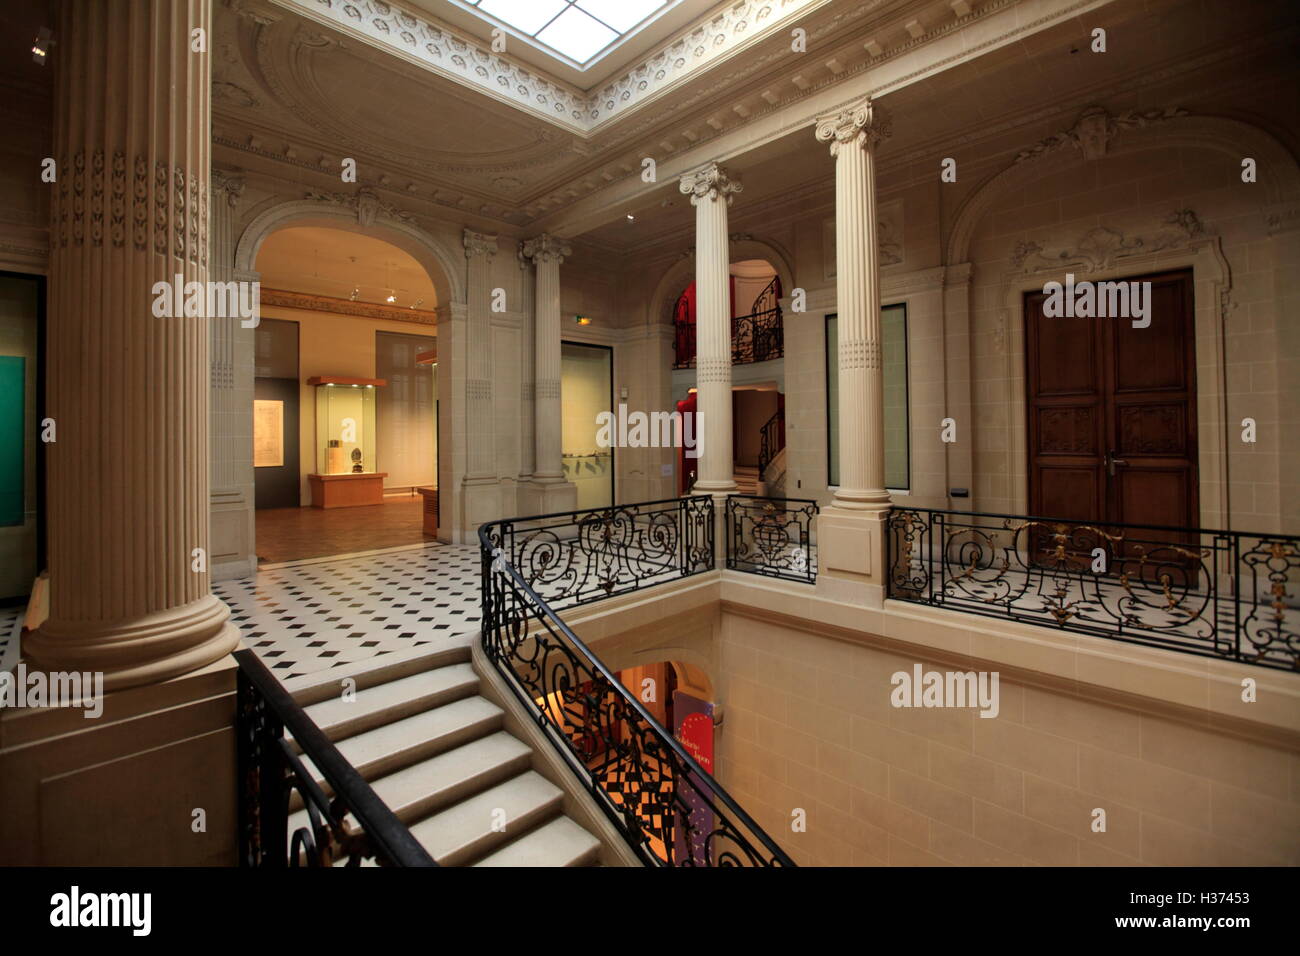 Die Innenansicht der Galeries du Pantheon Bouddhique des Museum Guimet.Paris. Frankreich Stockfoto